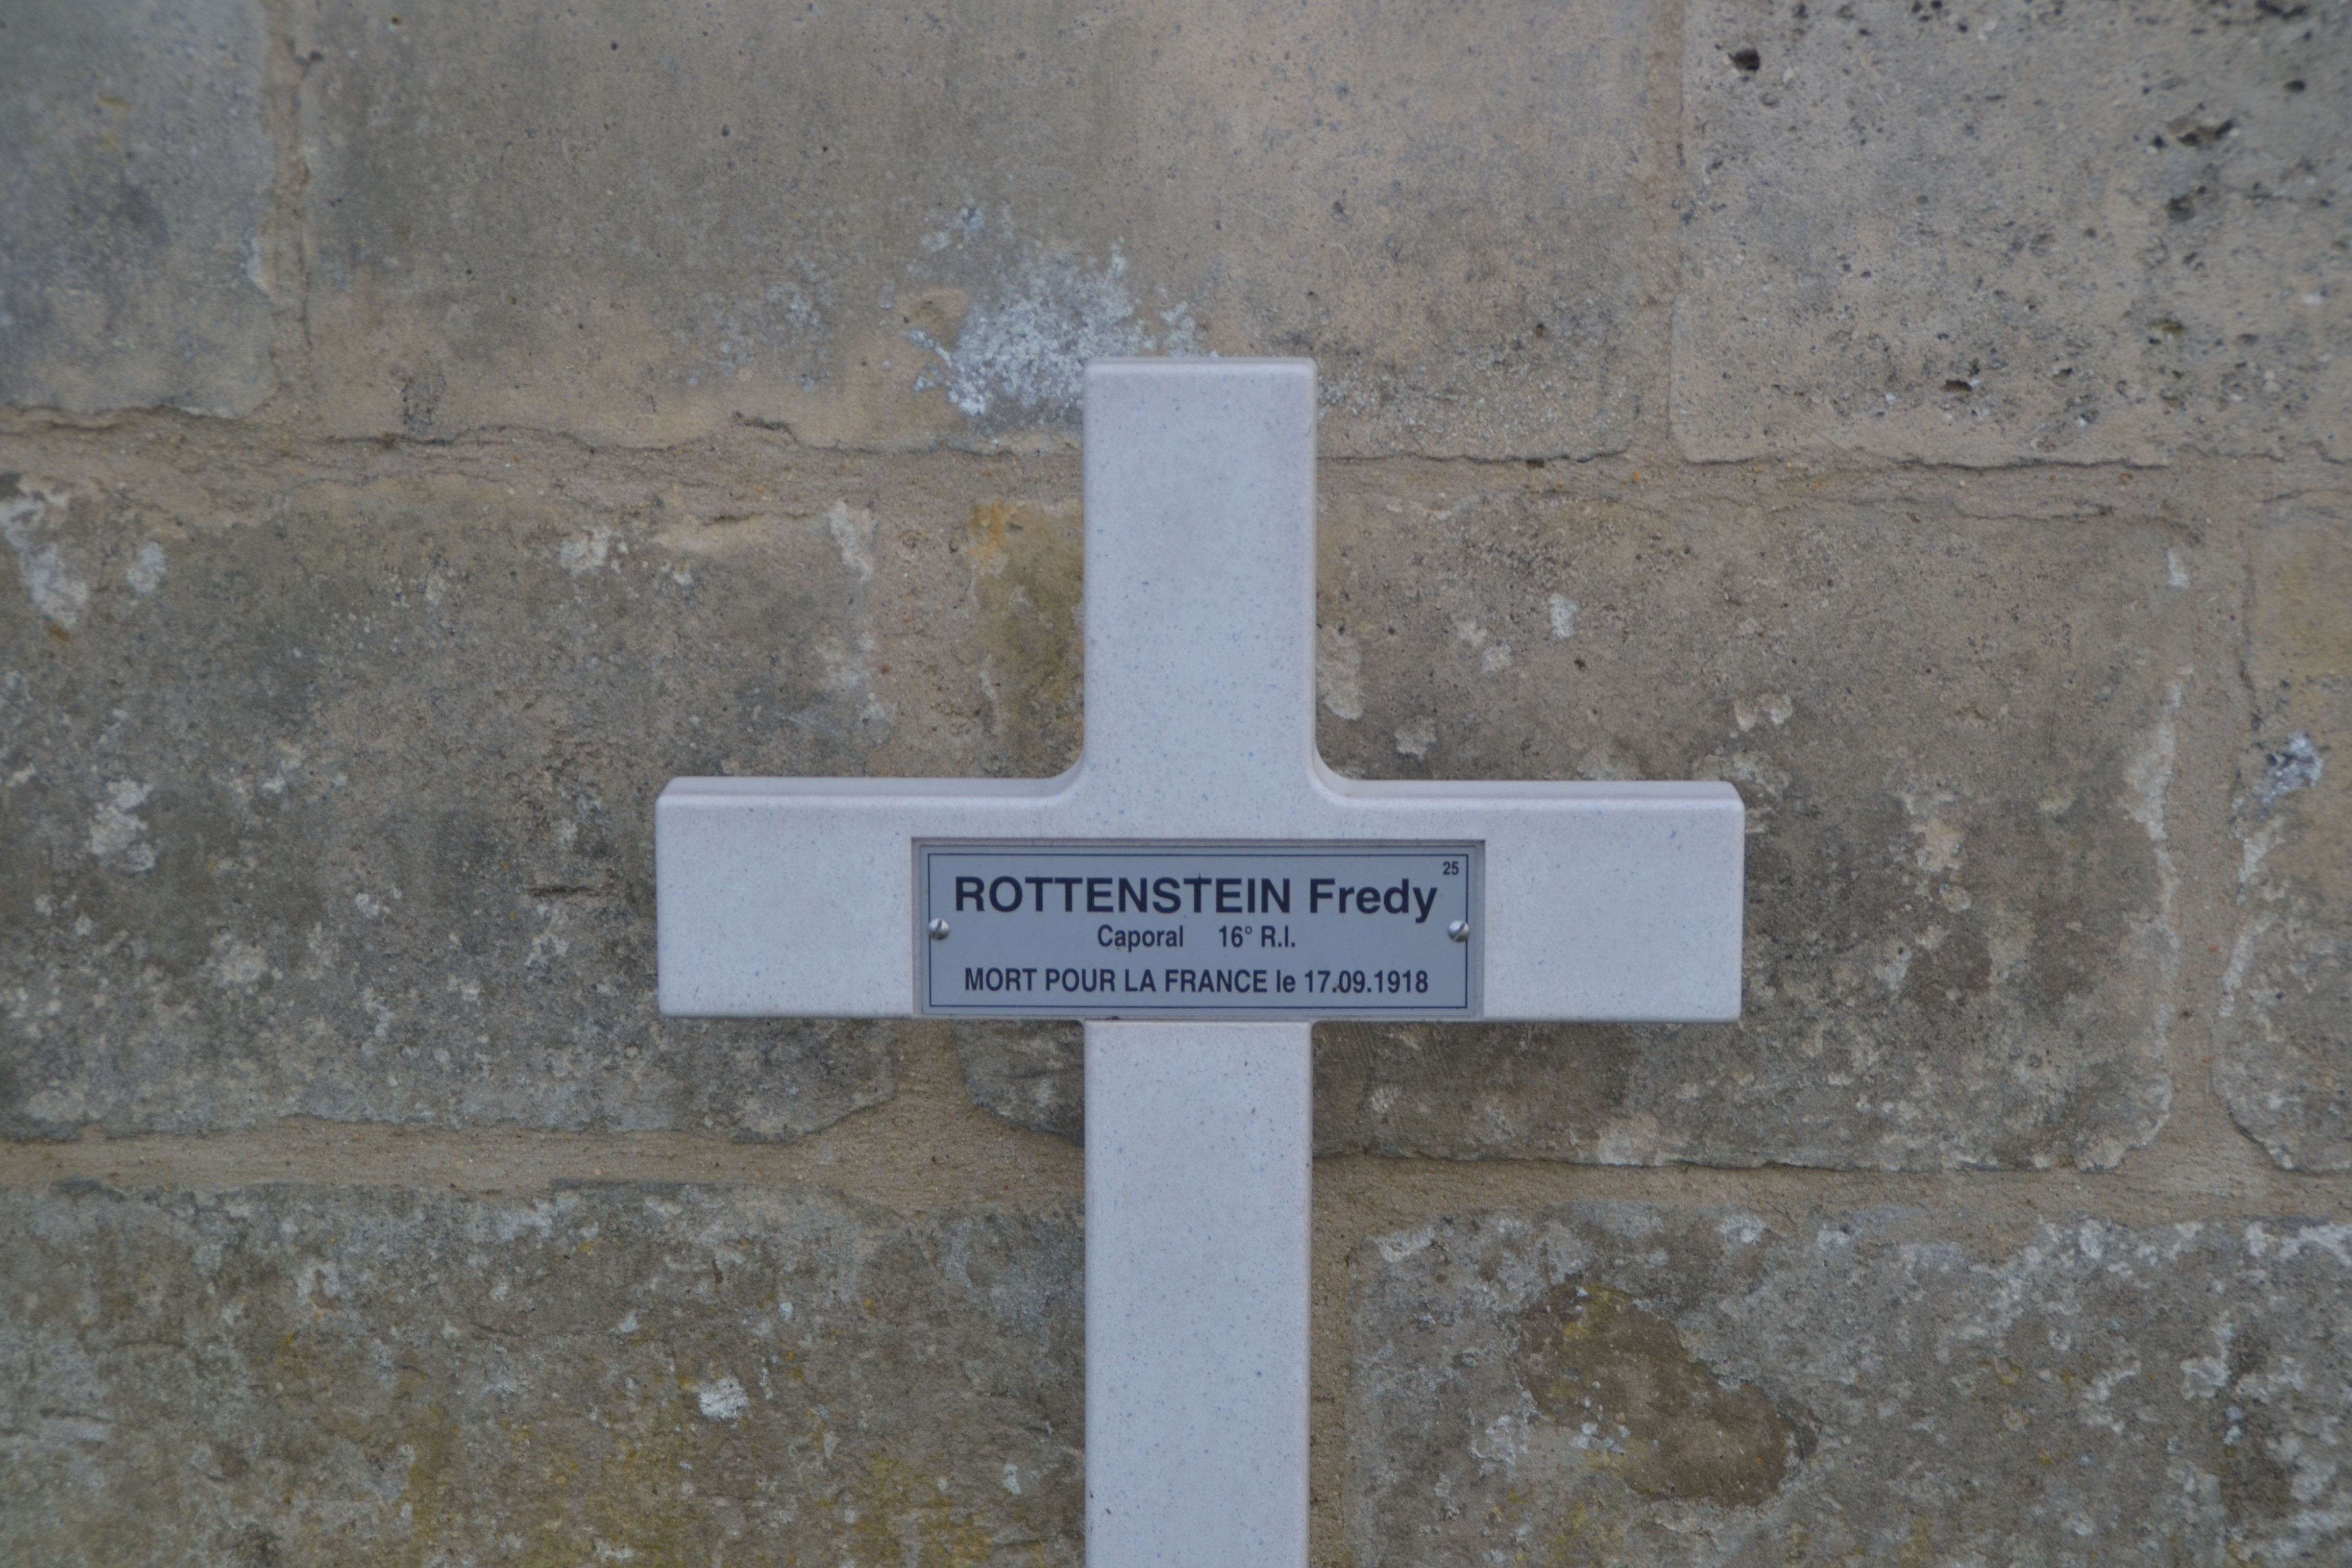 Rottenstein Fredy sépulture à Vénizel (Aisne)